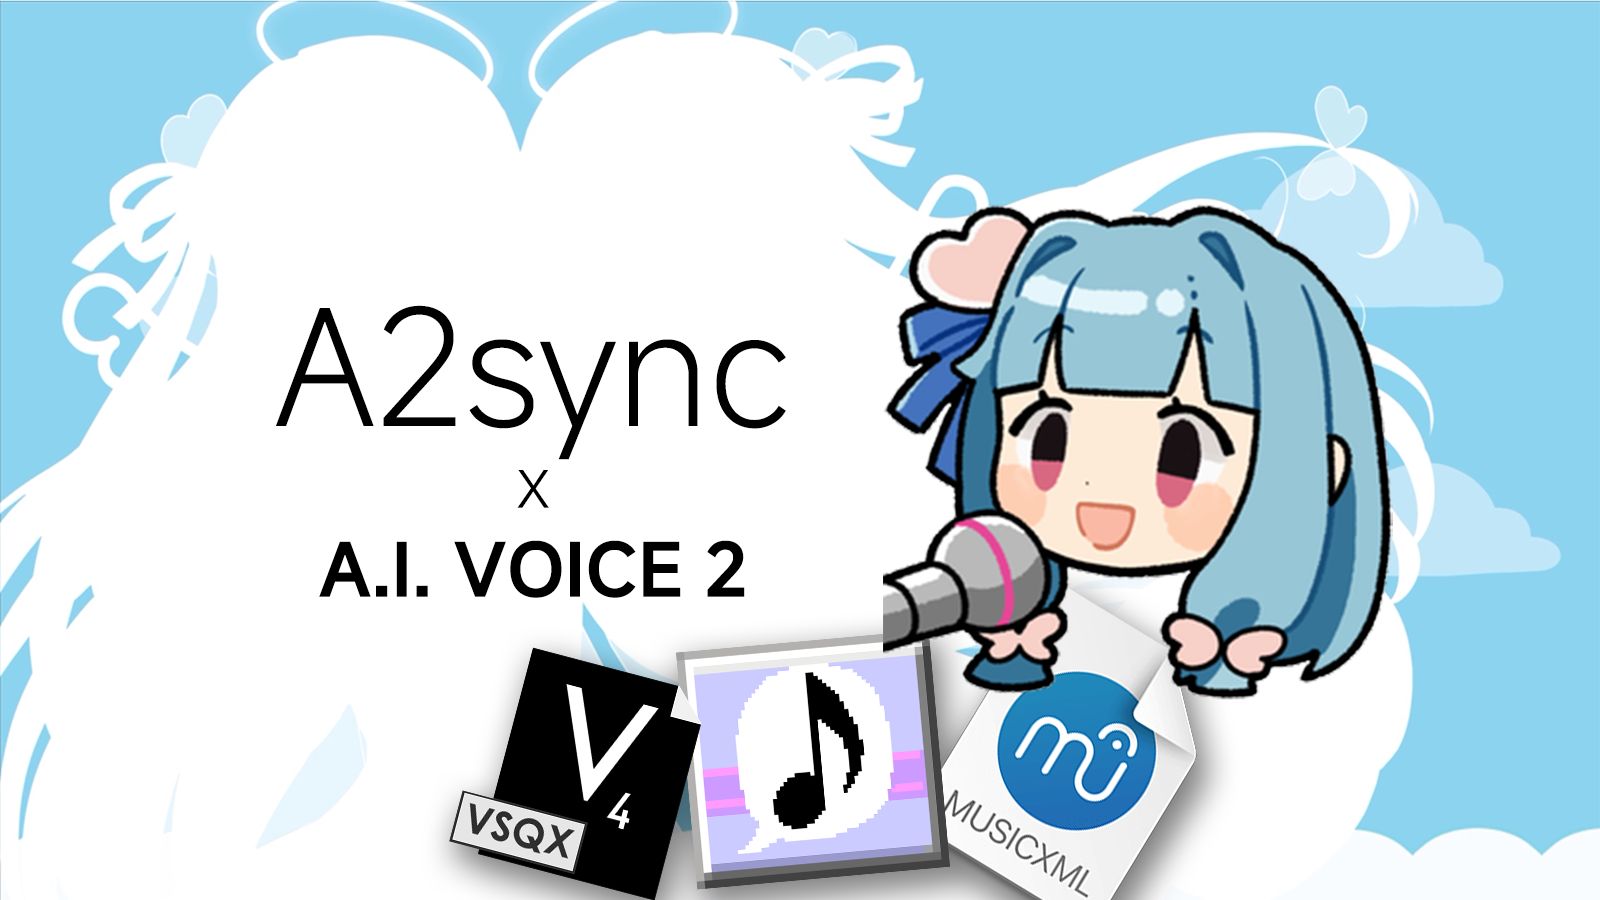 使用 A2sync 让你的 A.I. VOICE 2 唱歌！